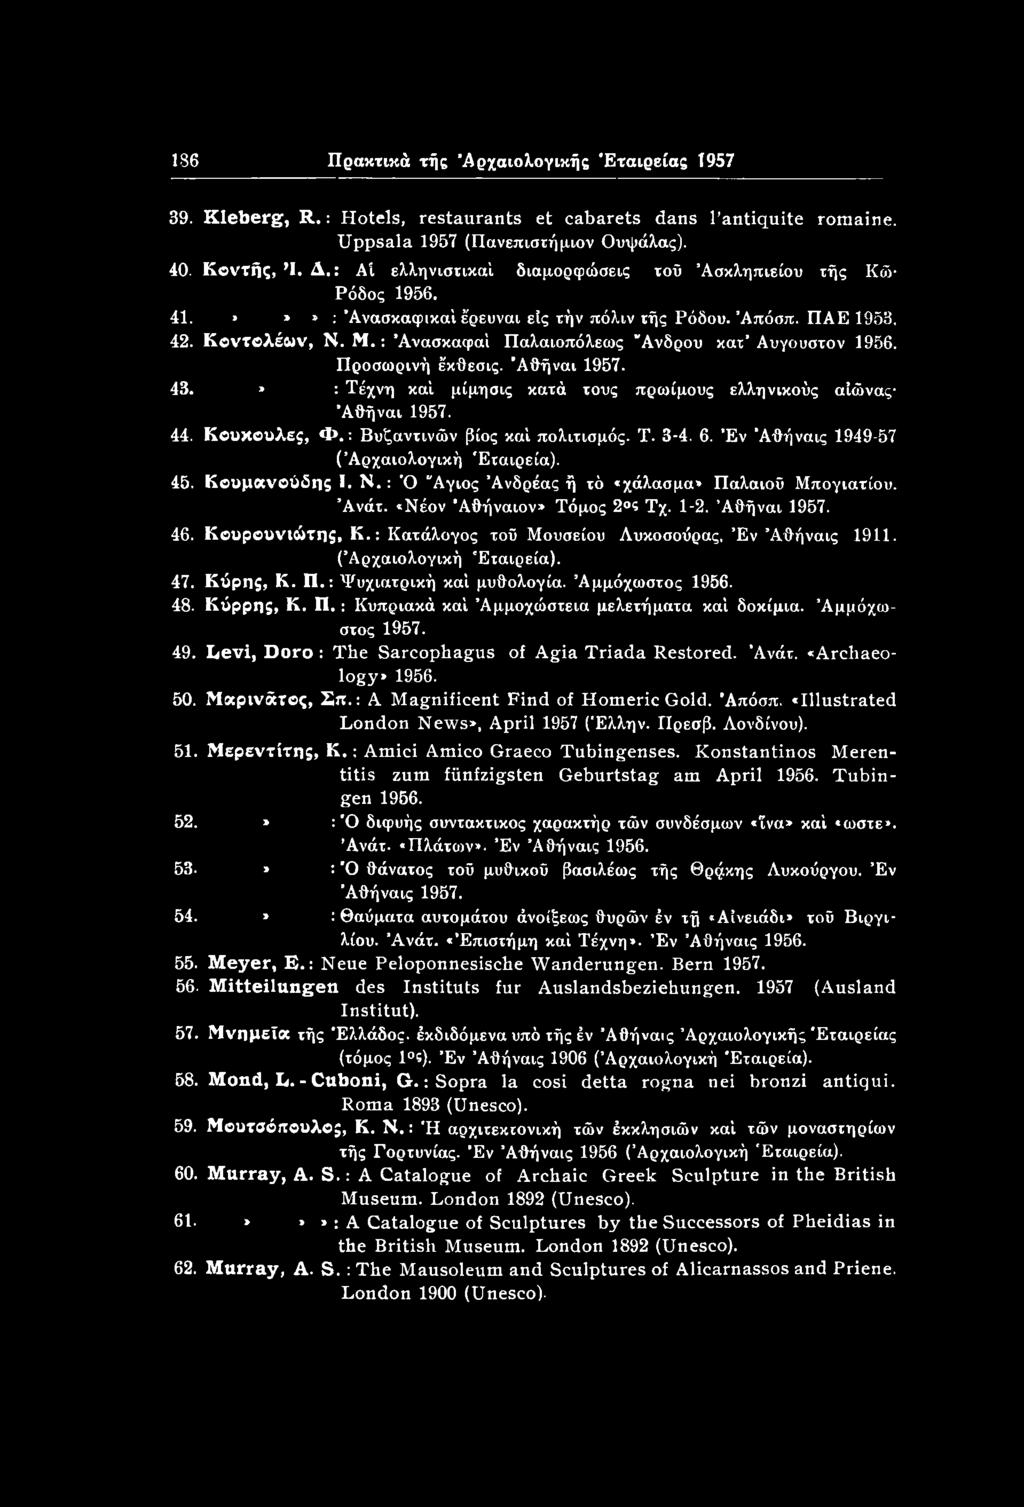 : Κατάλογος τού Μουσείου Λυκοσούρας, Έν Άθήναις 1911. ( Αρχαιολογική Εταιρεία). 47. Κόρης, Κ. Π.: Ψυχιατρική καί μυθολογία. Αμμόχωστος 1956. 48. Κόρρης, Κ. Π. : Κυπριακά καί Αμμοχώστεια μελετήματα καί δοκίμια.